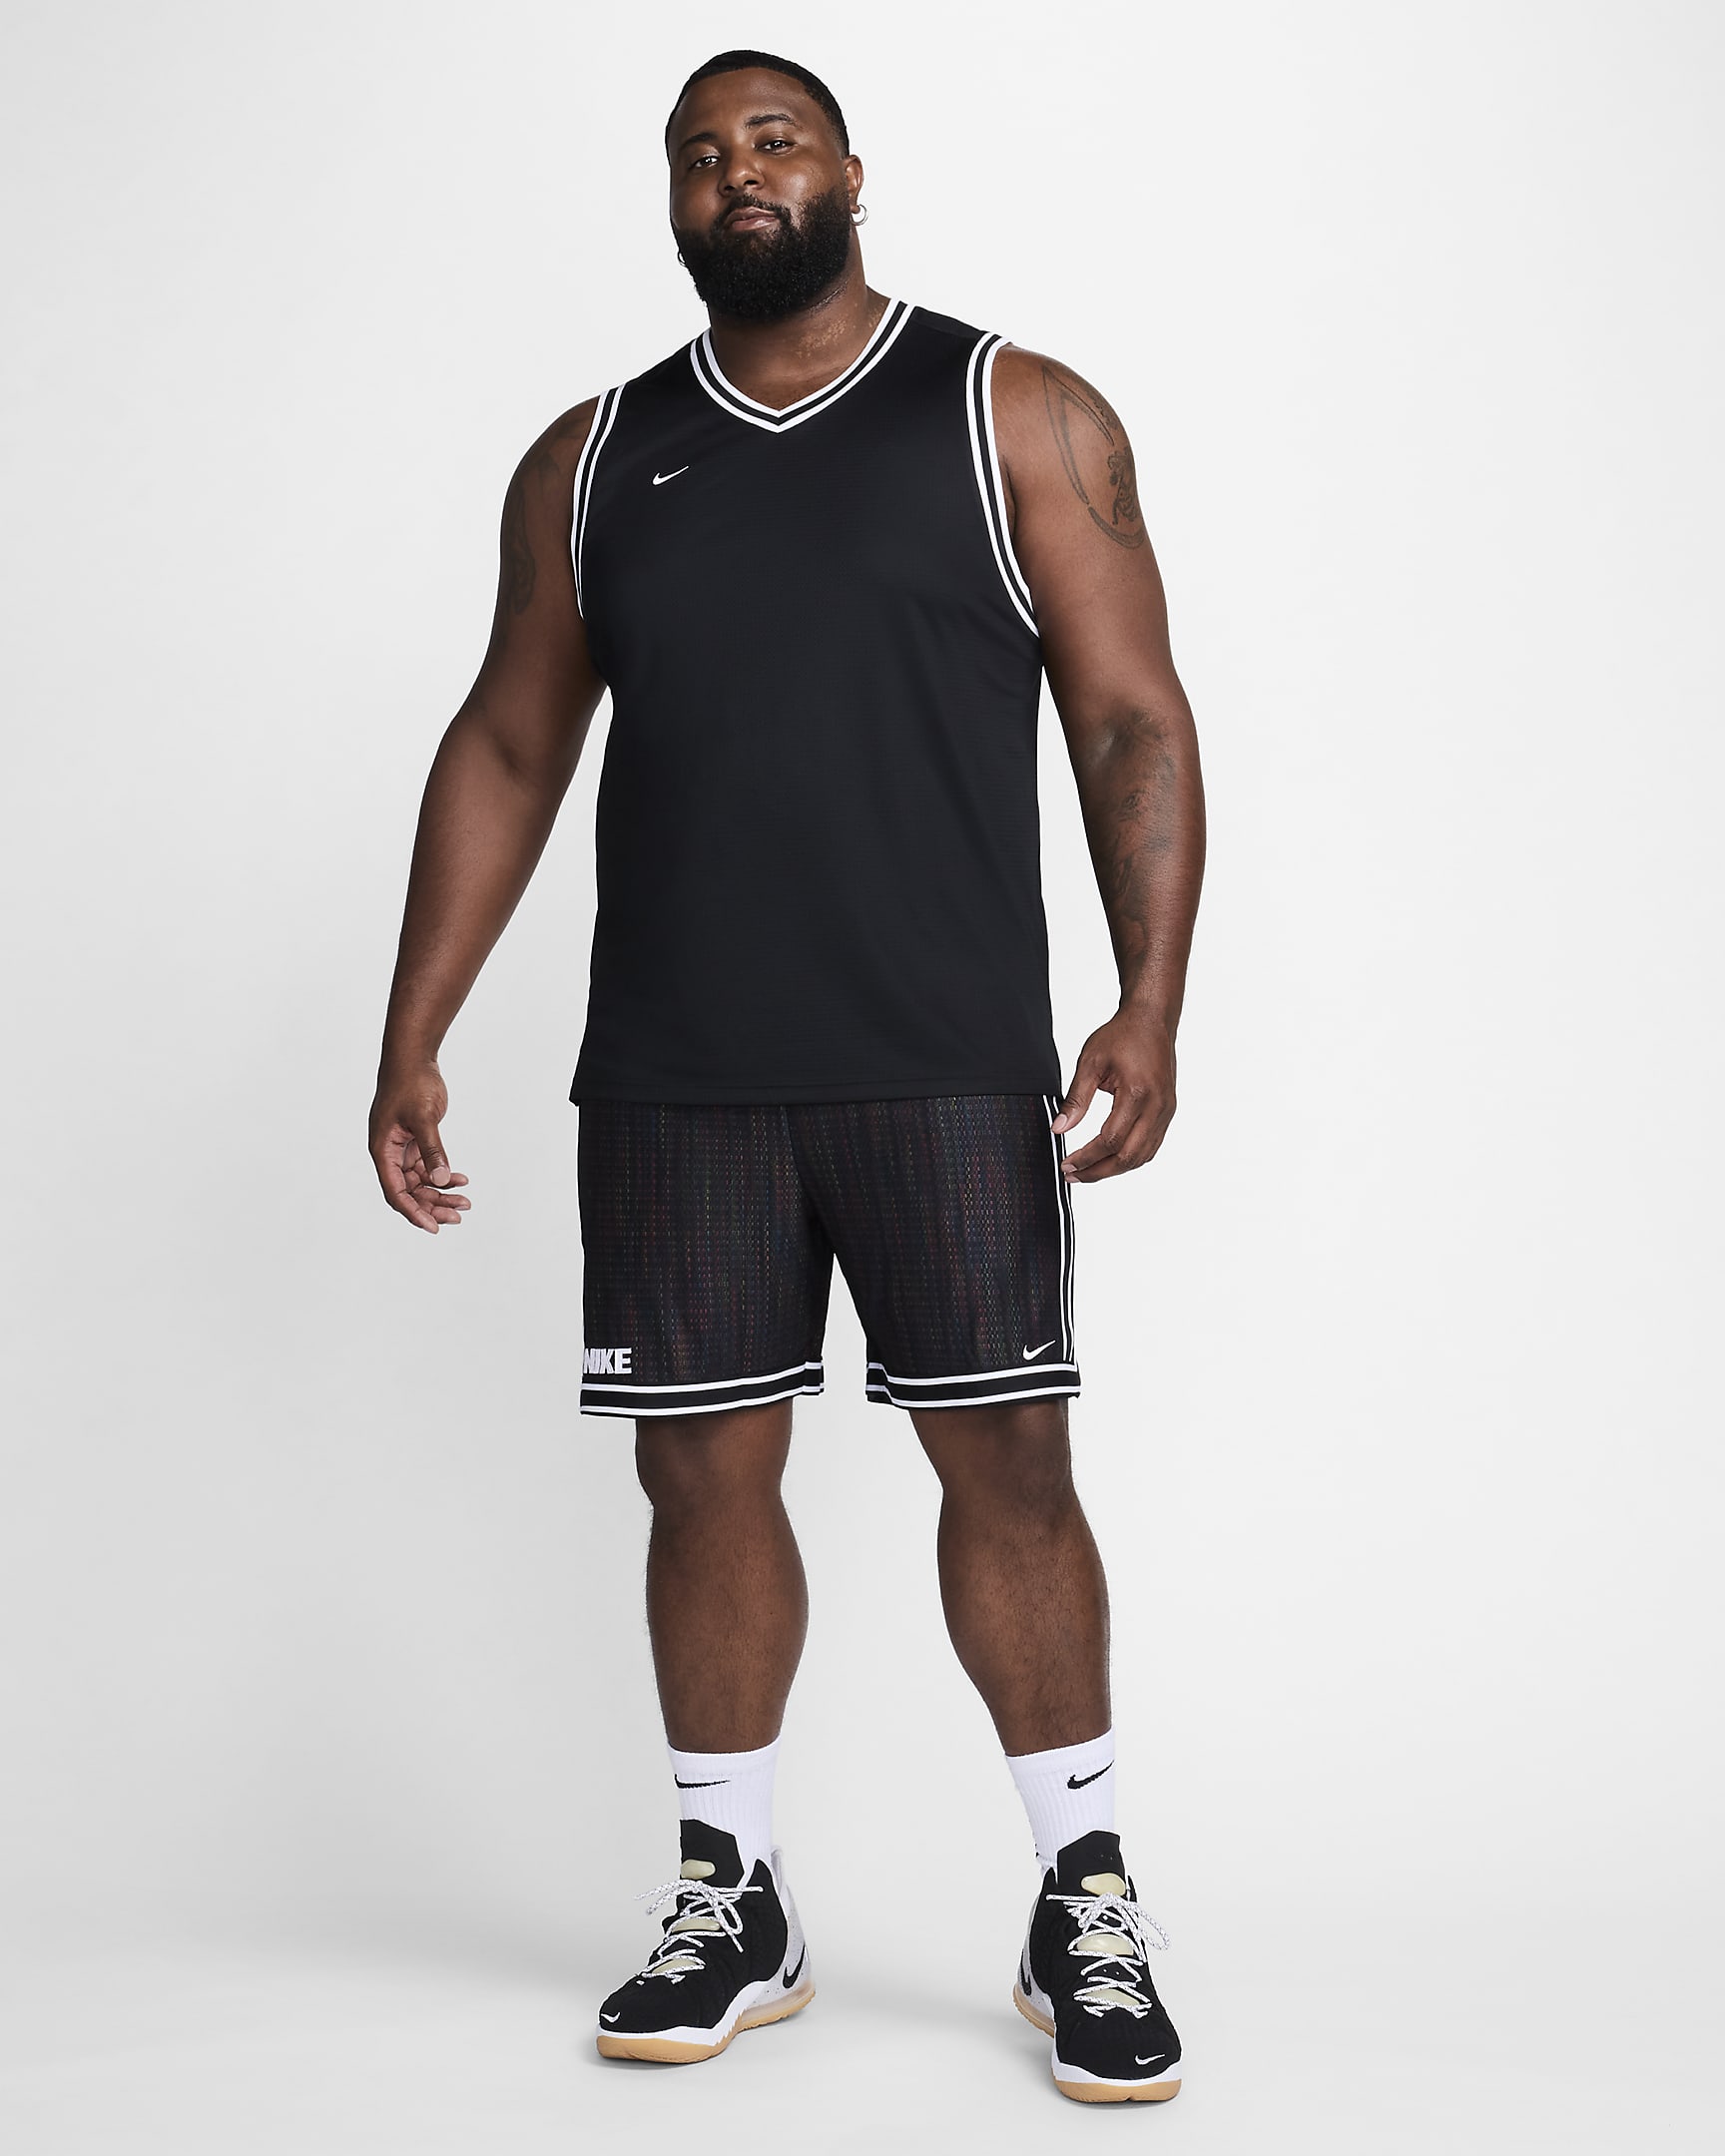 Shorts de básquetbol de 20 cm para hombre Nike Dri-FIT DNA+. Nike.com